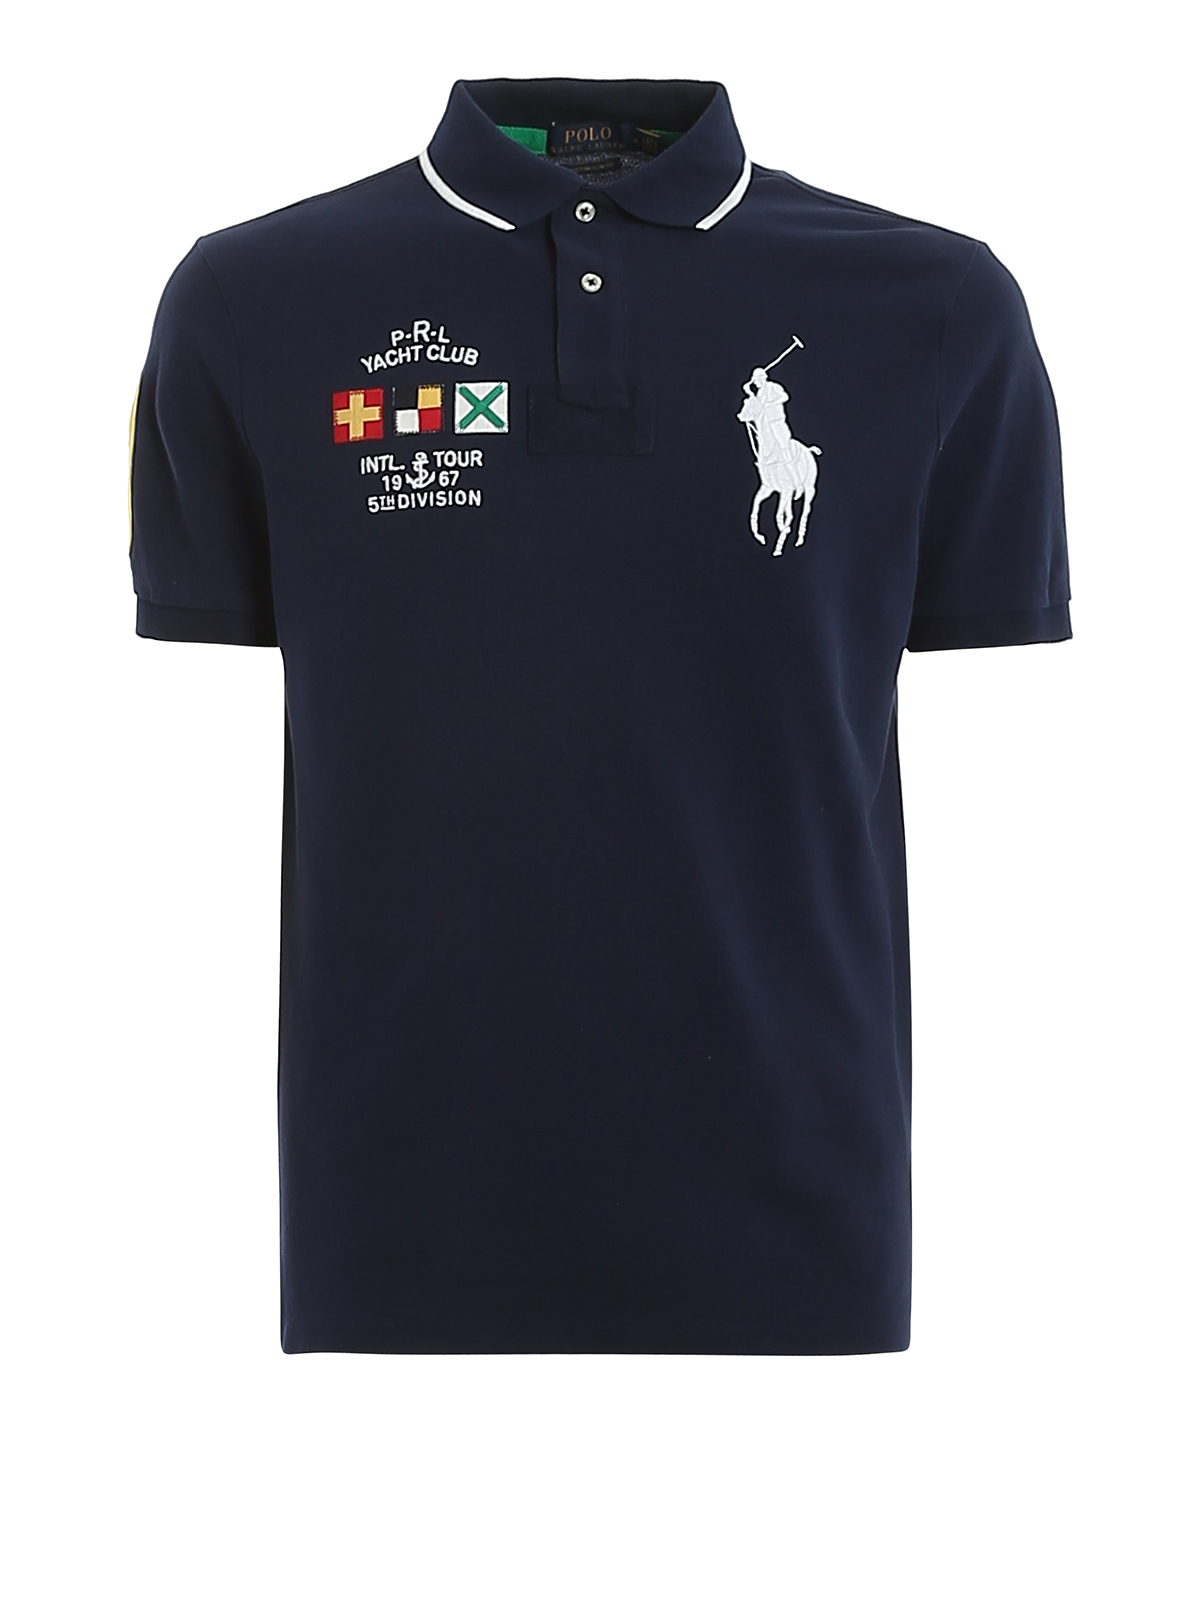 Yacht club pique cotton logoed polo 